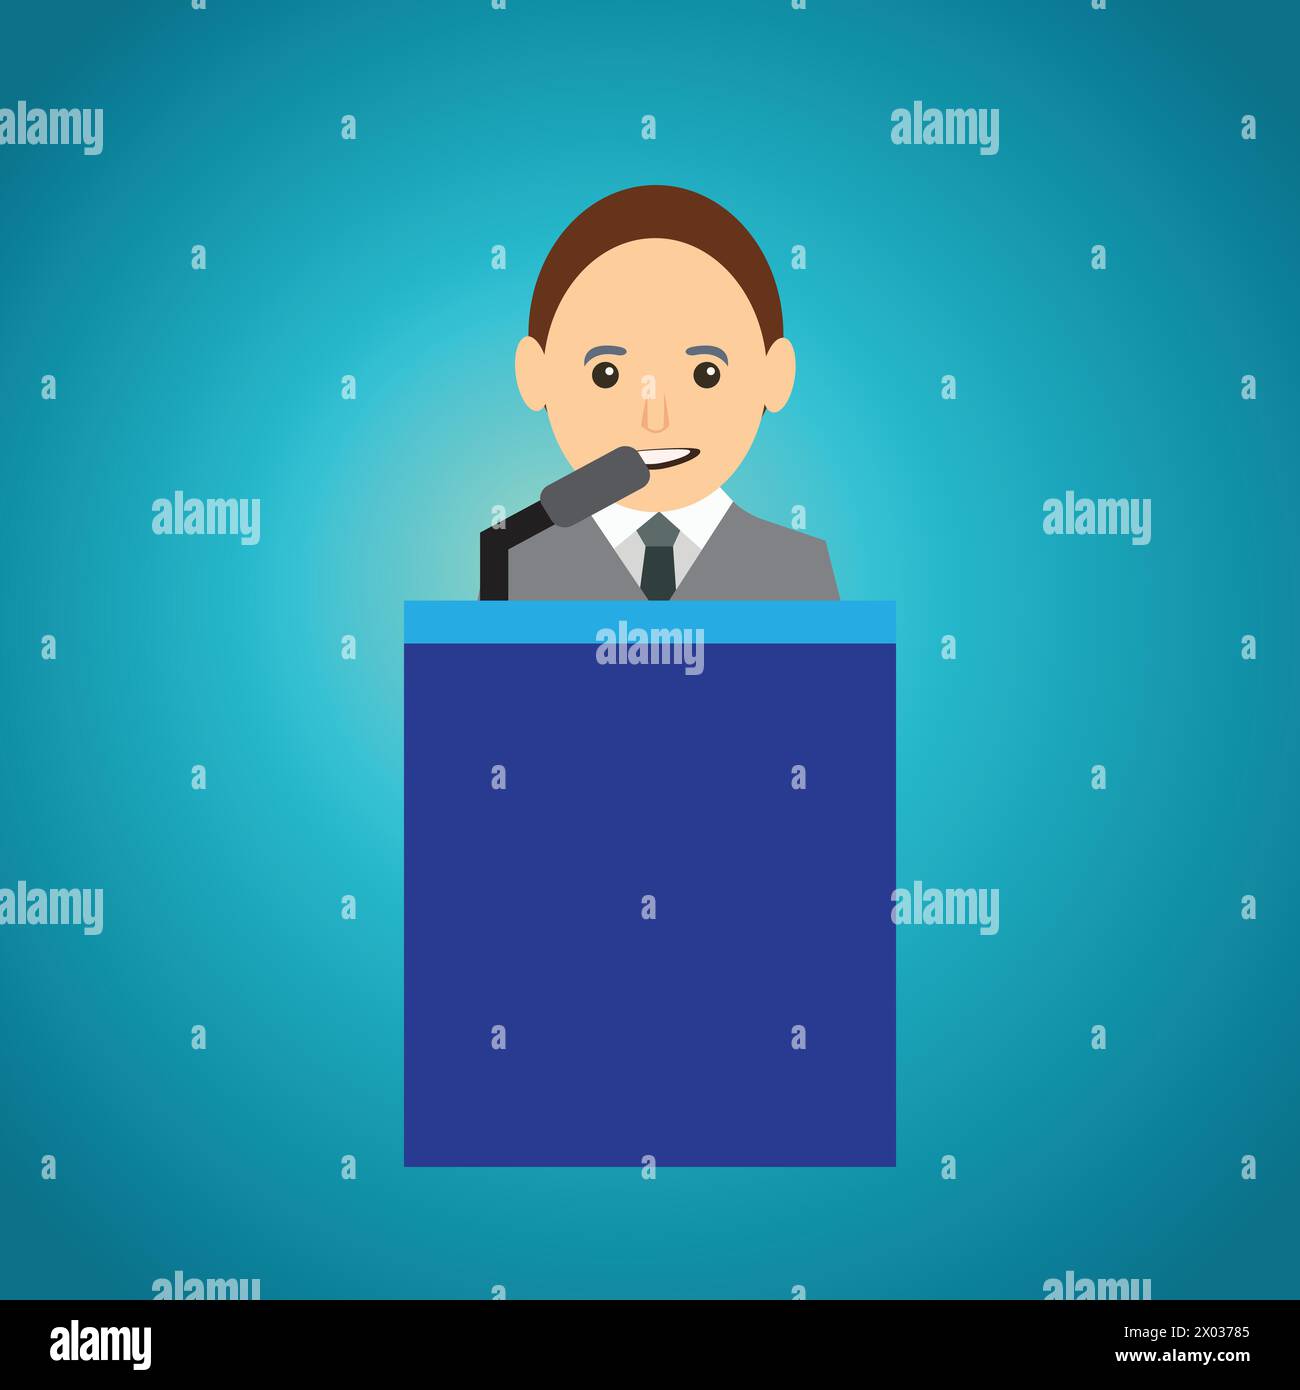 Mann mit Krawatte und Anzug hält eine Rede von einem Tribune Stock Vektor